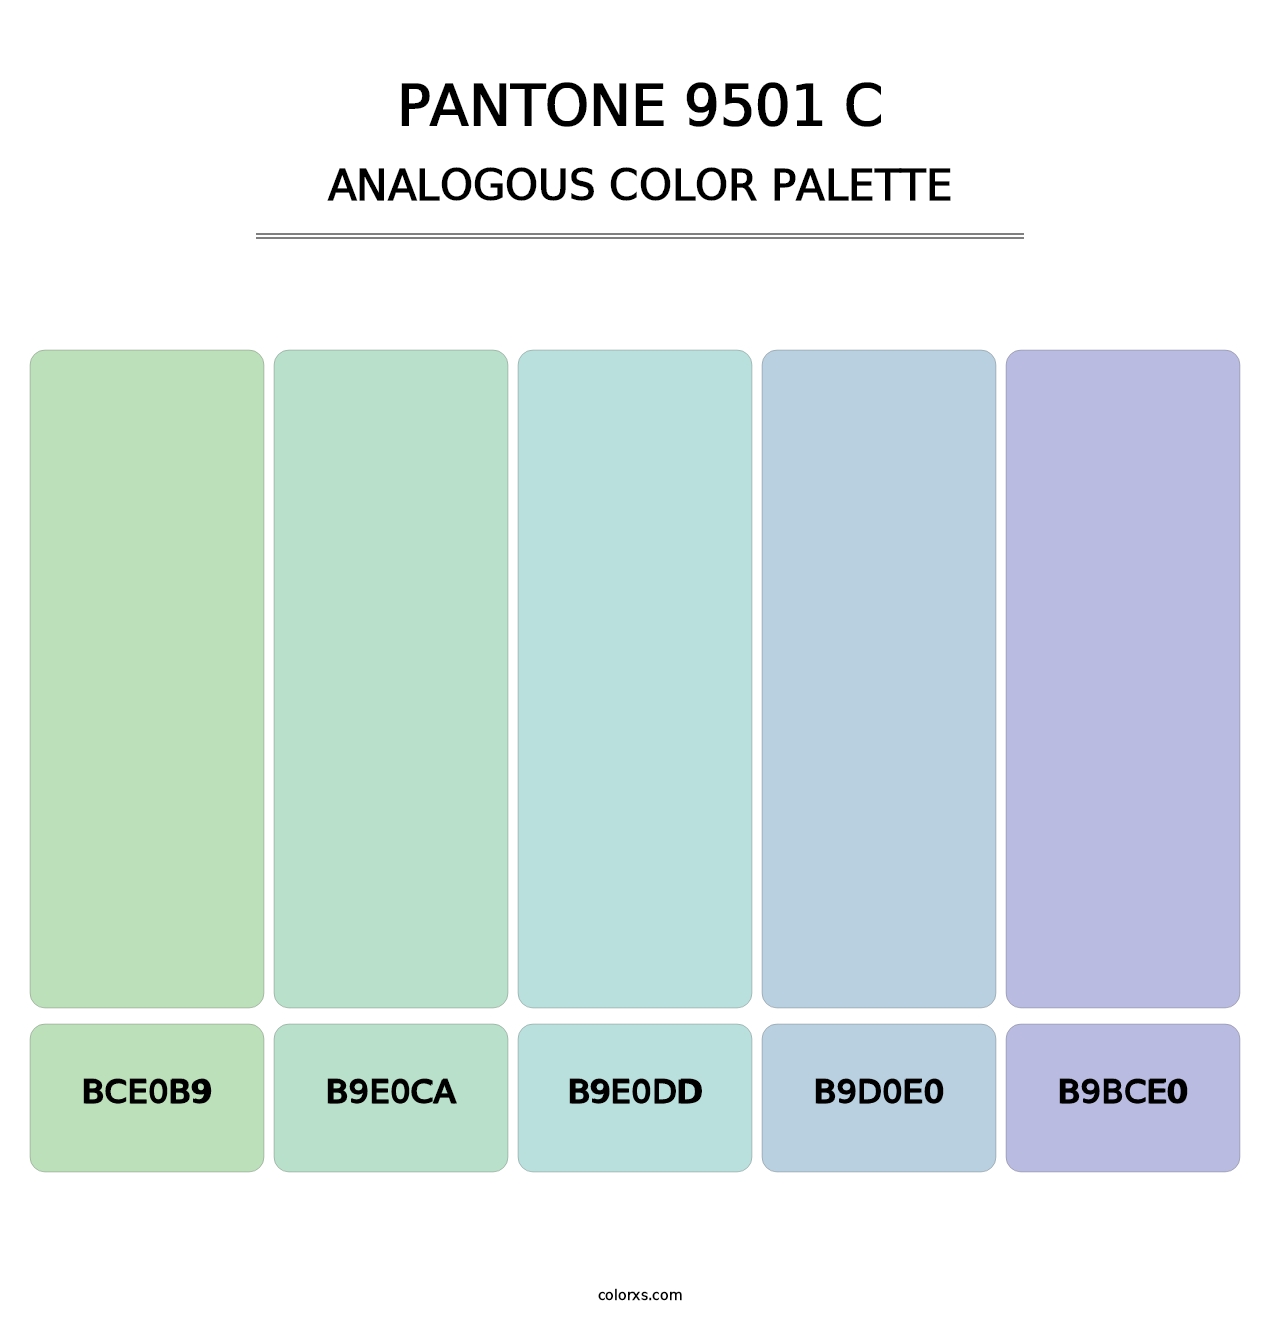 PANTONE 9501 C - Analogous Color Palette